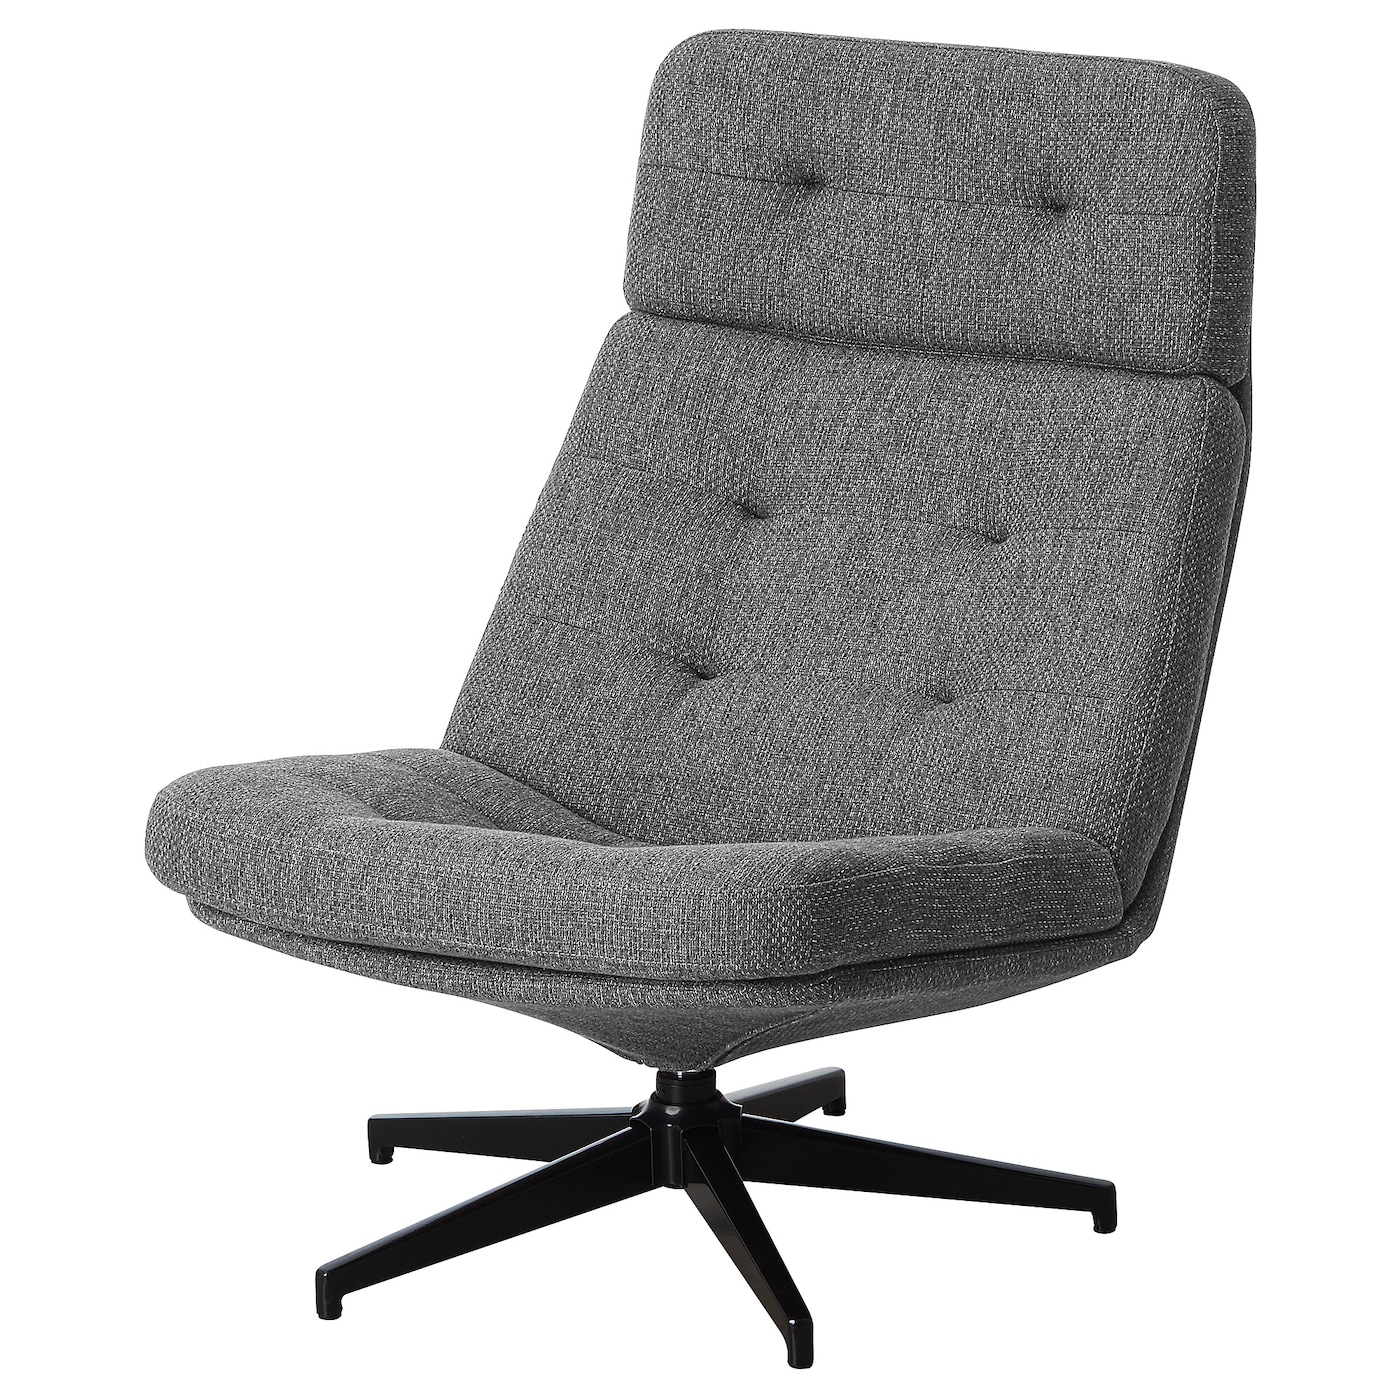 ХАВБЕРГ Вращающееся кресло, Лейде серый/черный HAVBERG IKEA компьютерное кресло gy офисное кресло студенческое учебное кресло подъемное небольшое вращающееся кресло удобное длинное сидение прост